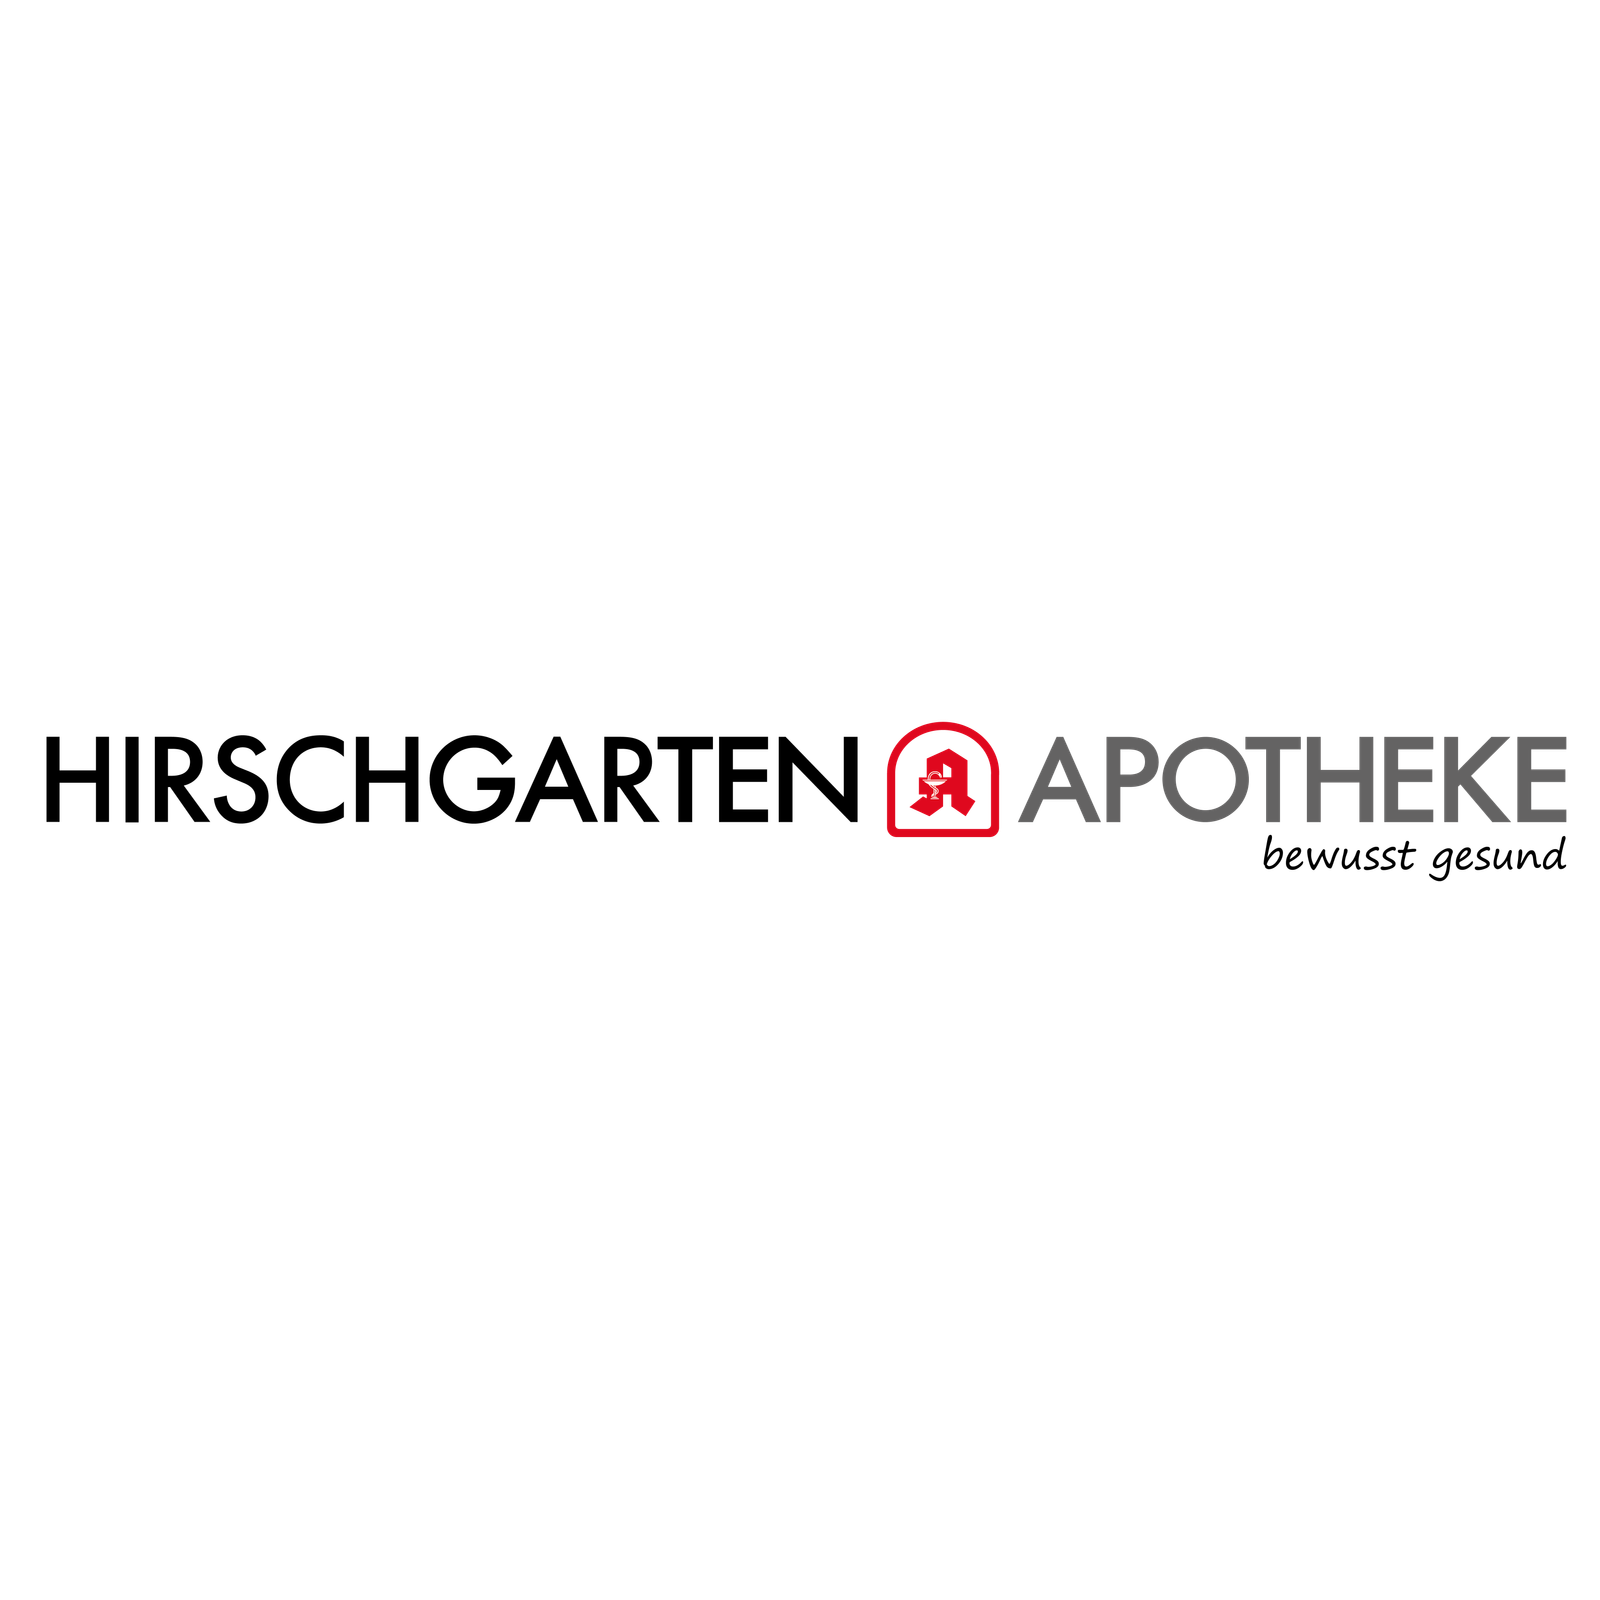 Hirschgarten Apotheke in München - Logo